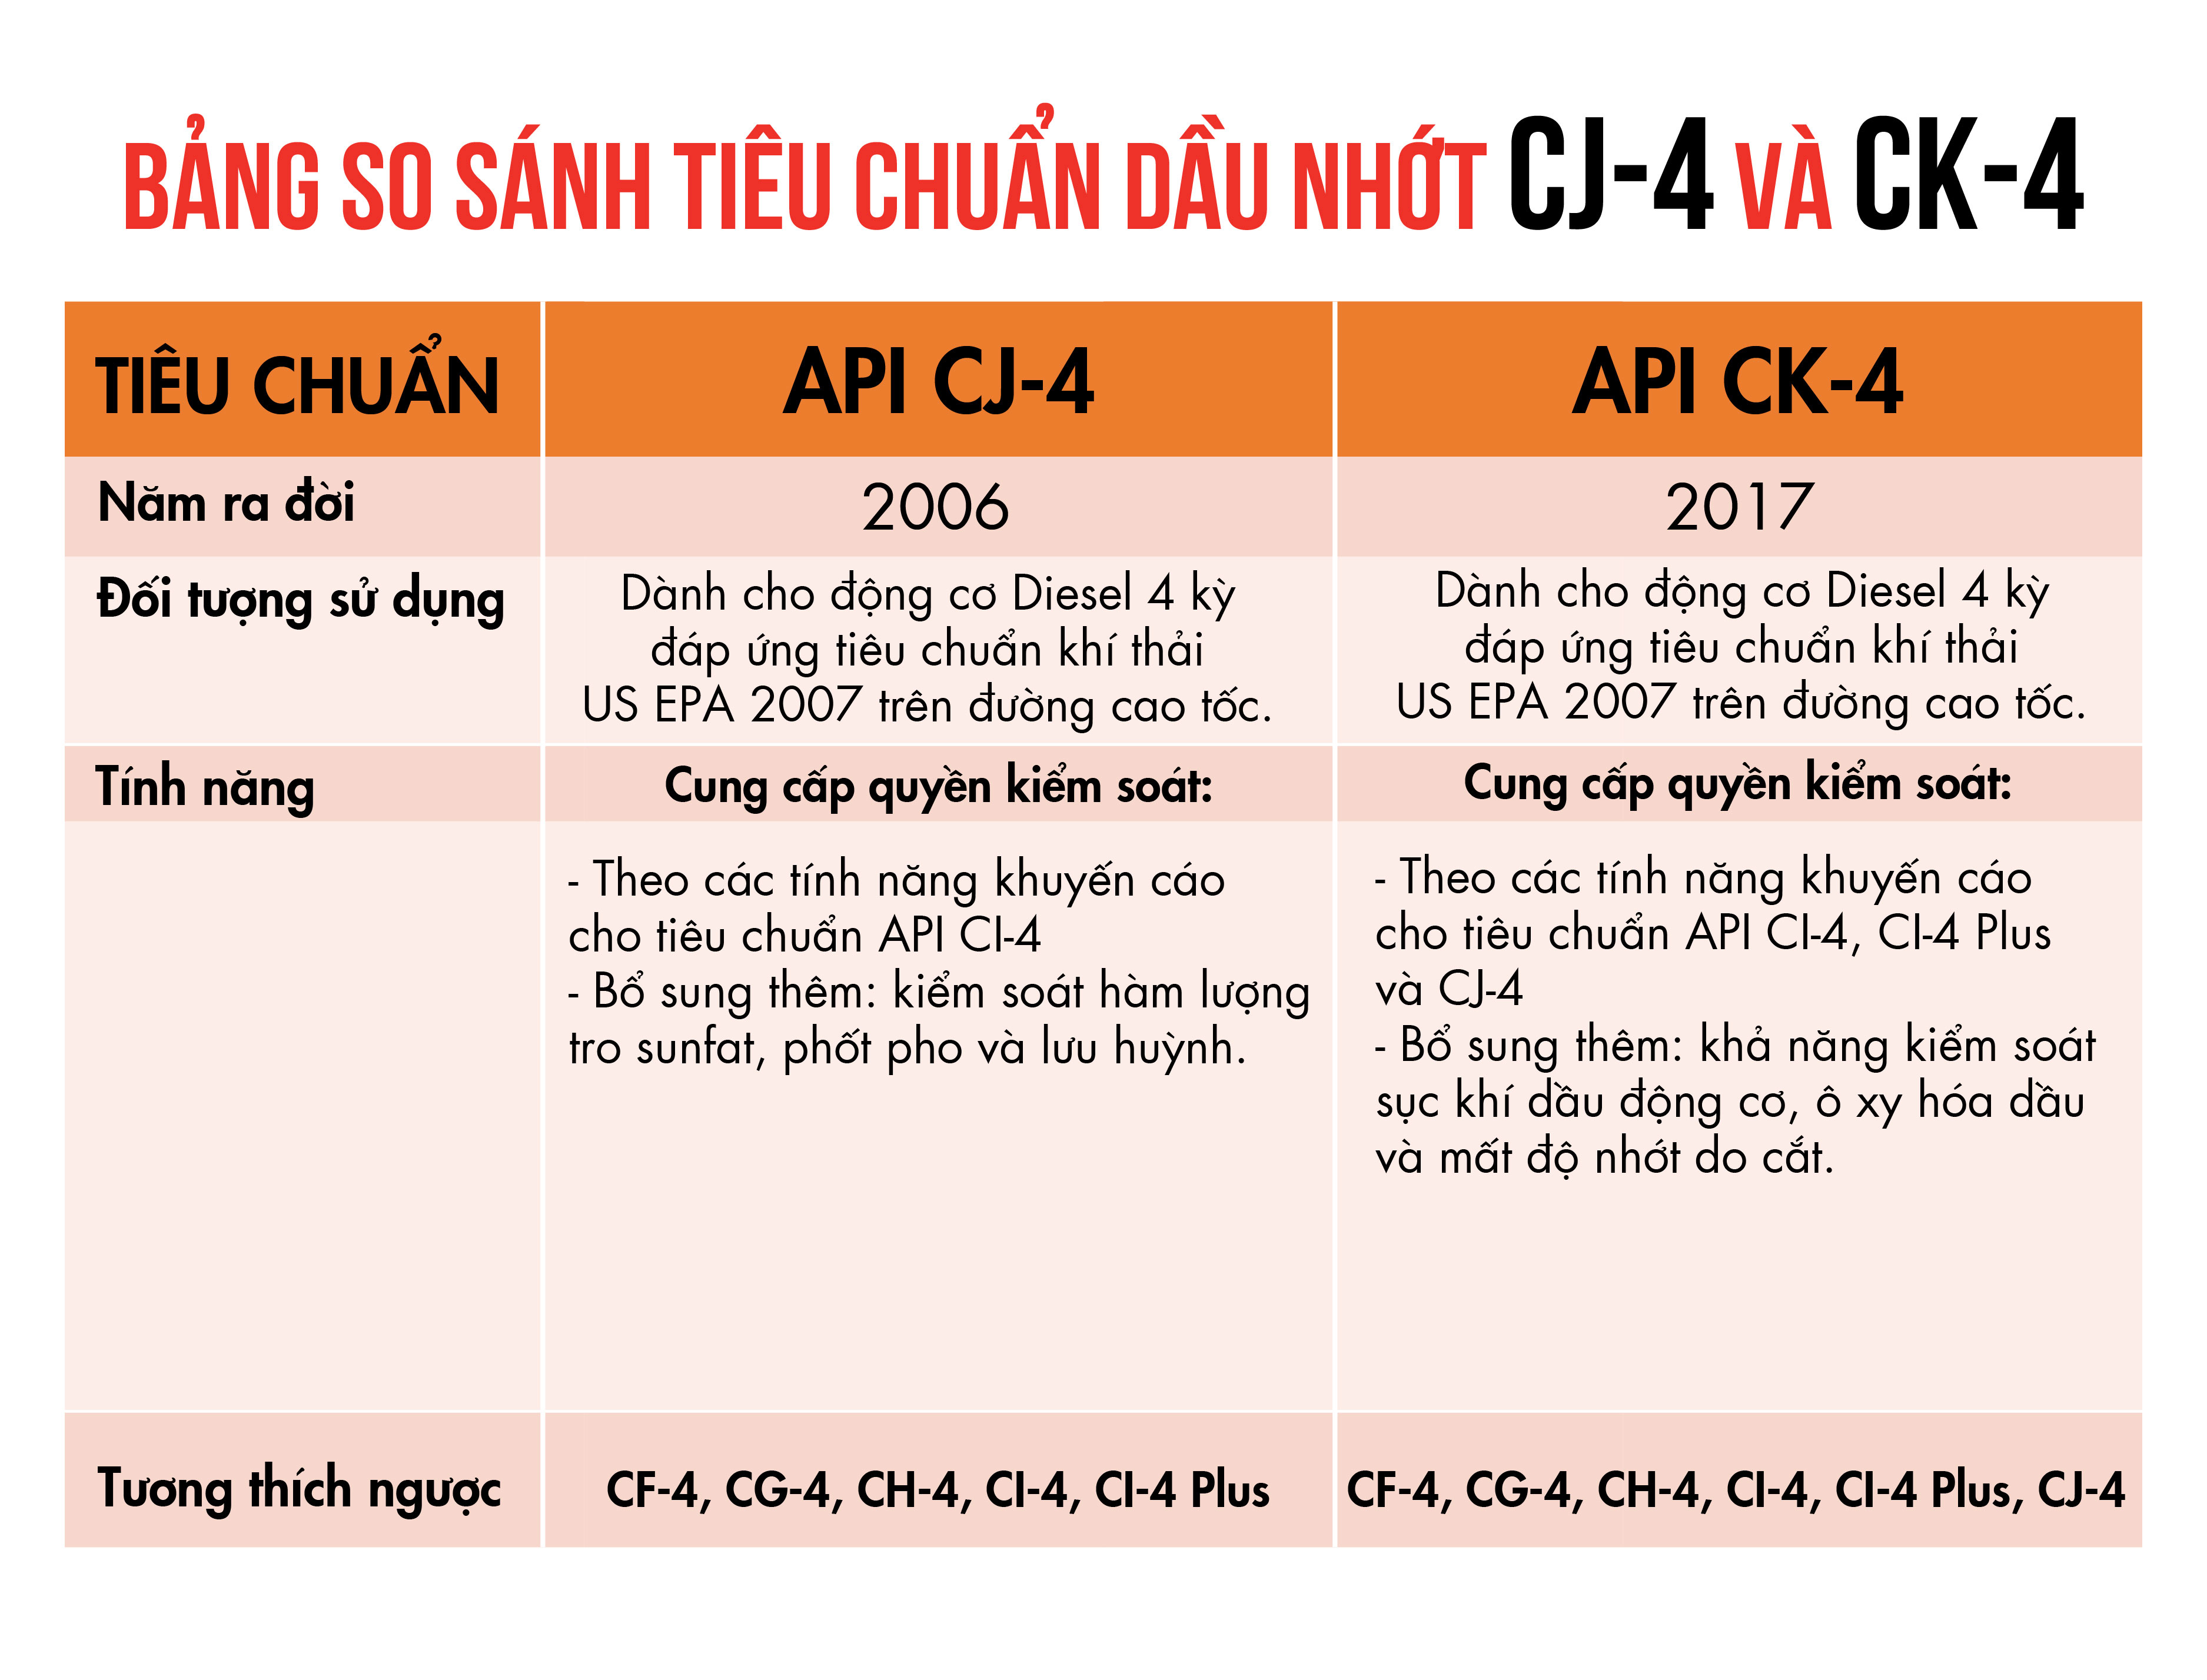 So sánh tiêu chuẩn dầu nhớt CK-4 (2017) và CJ-4 (2006).